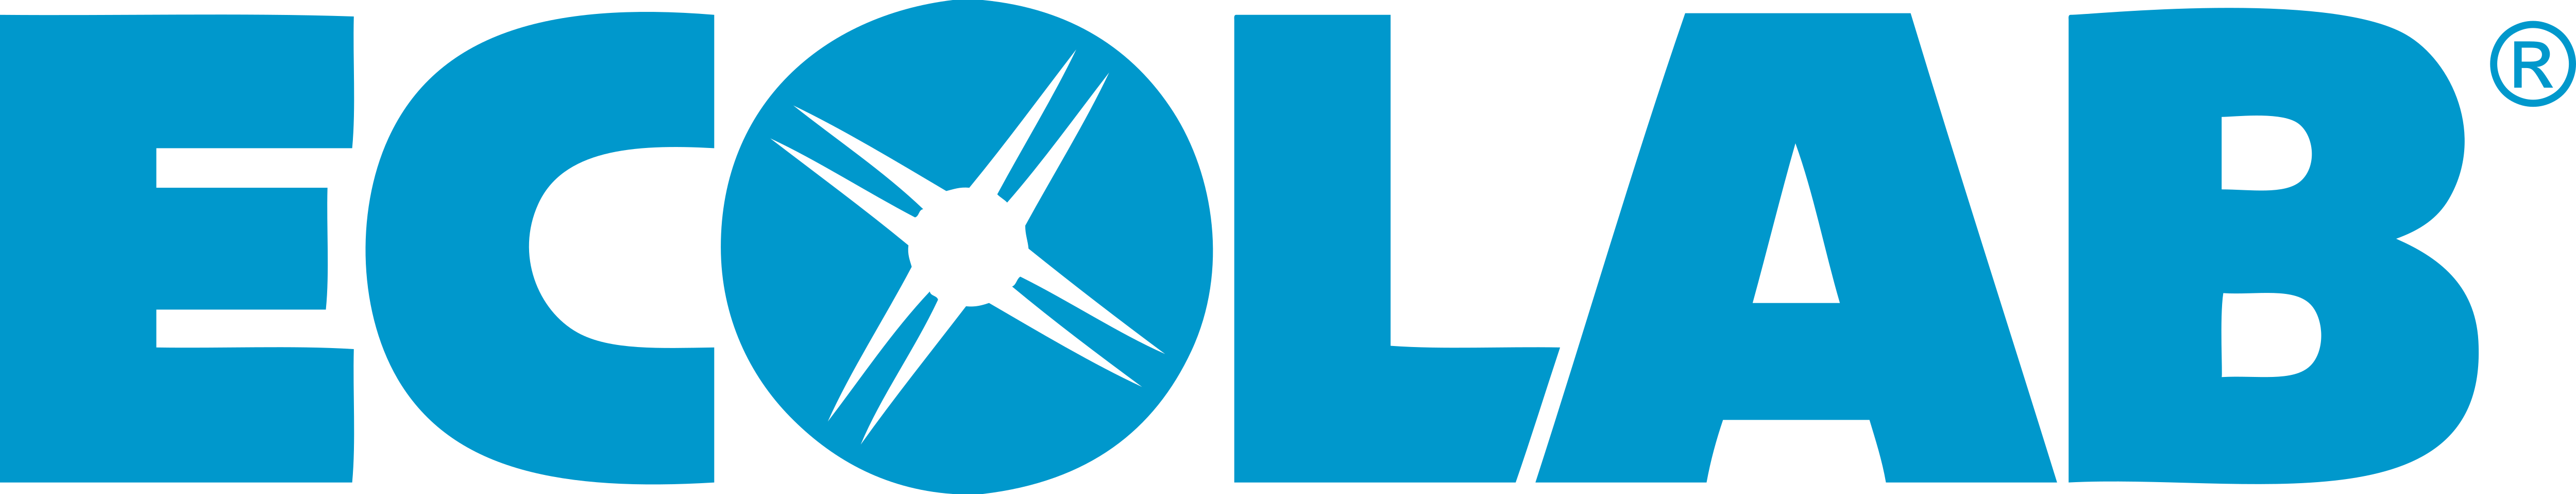 Ecolab Logos Download